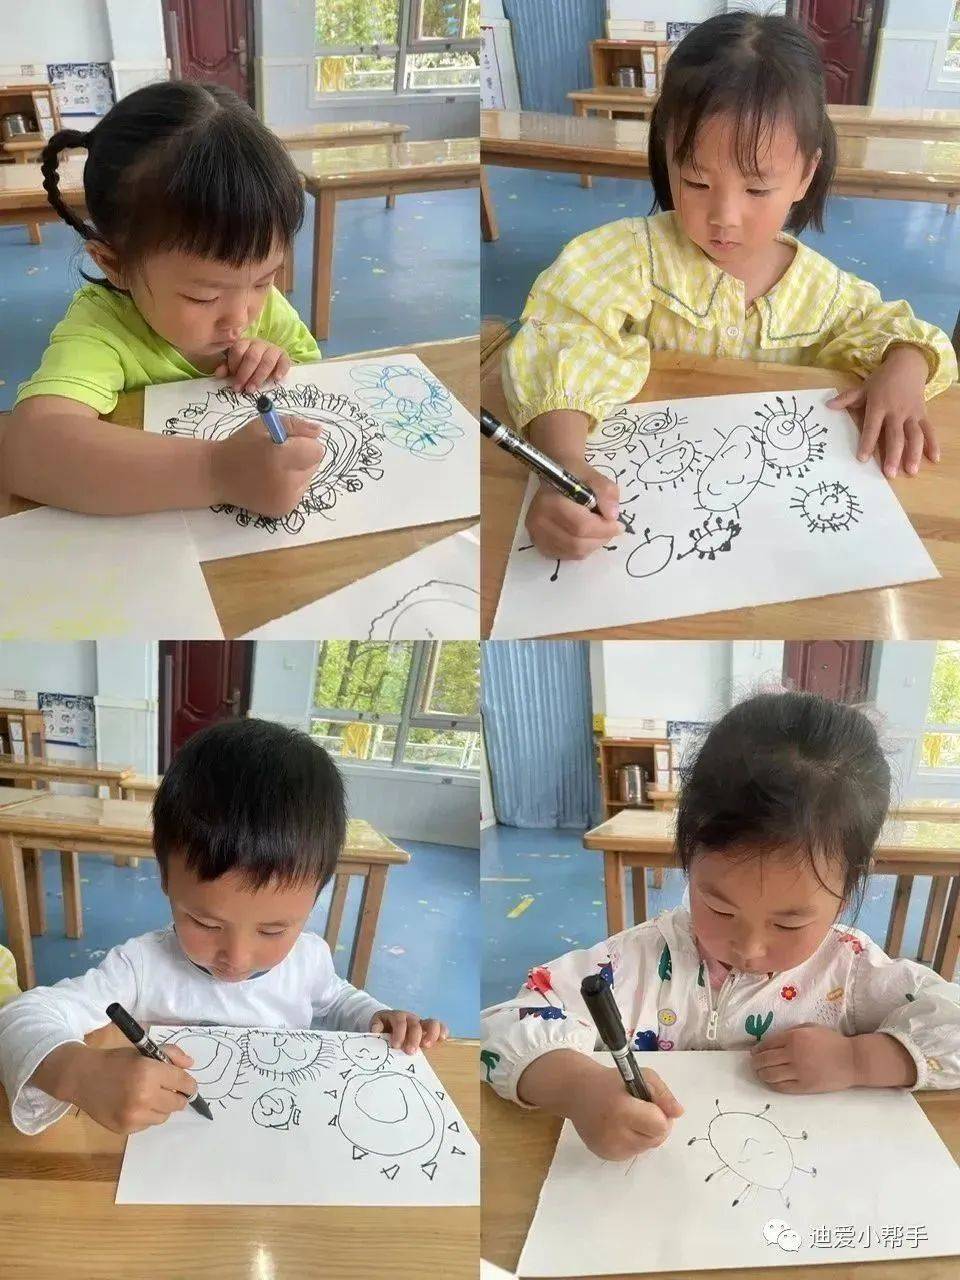 “遇见童心•邂逅童画”——迪爱宝贝麓山幼儿园幼儿涂鸦活动